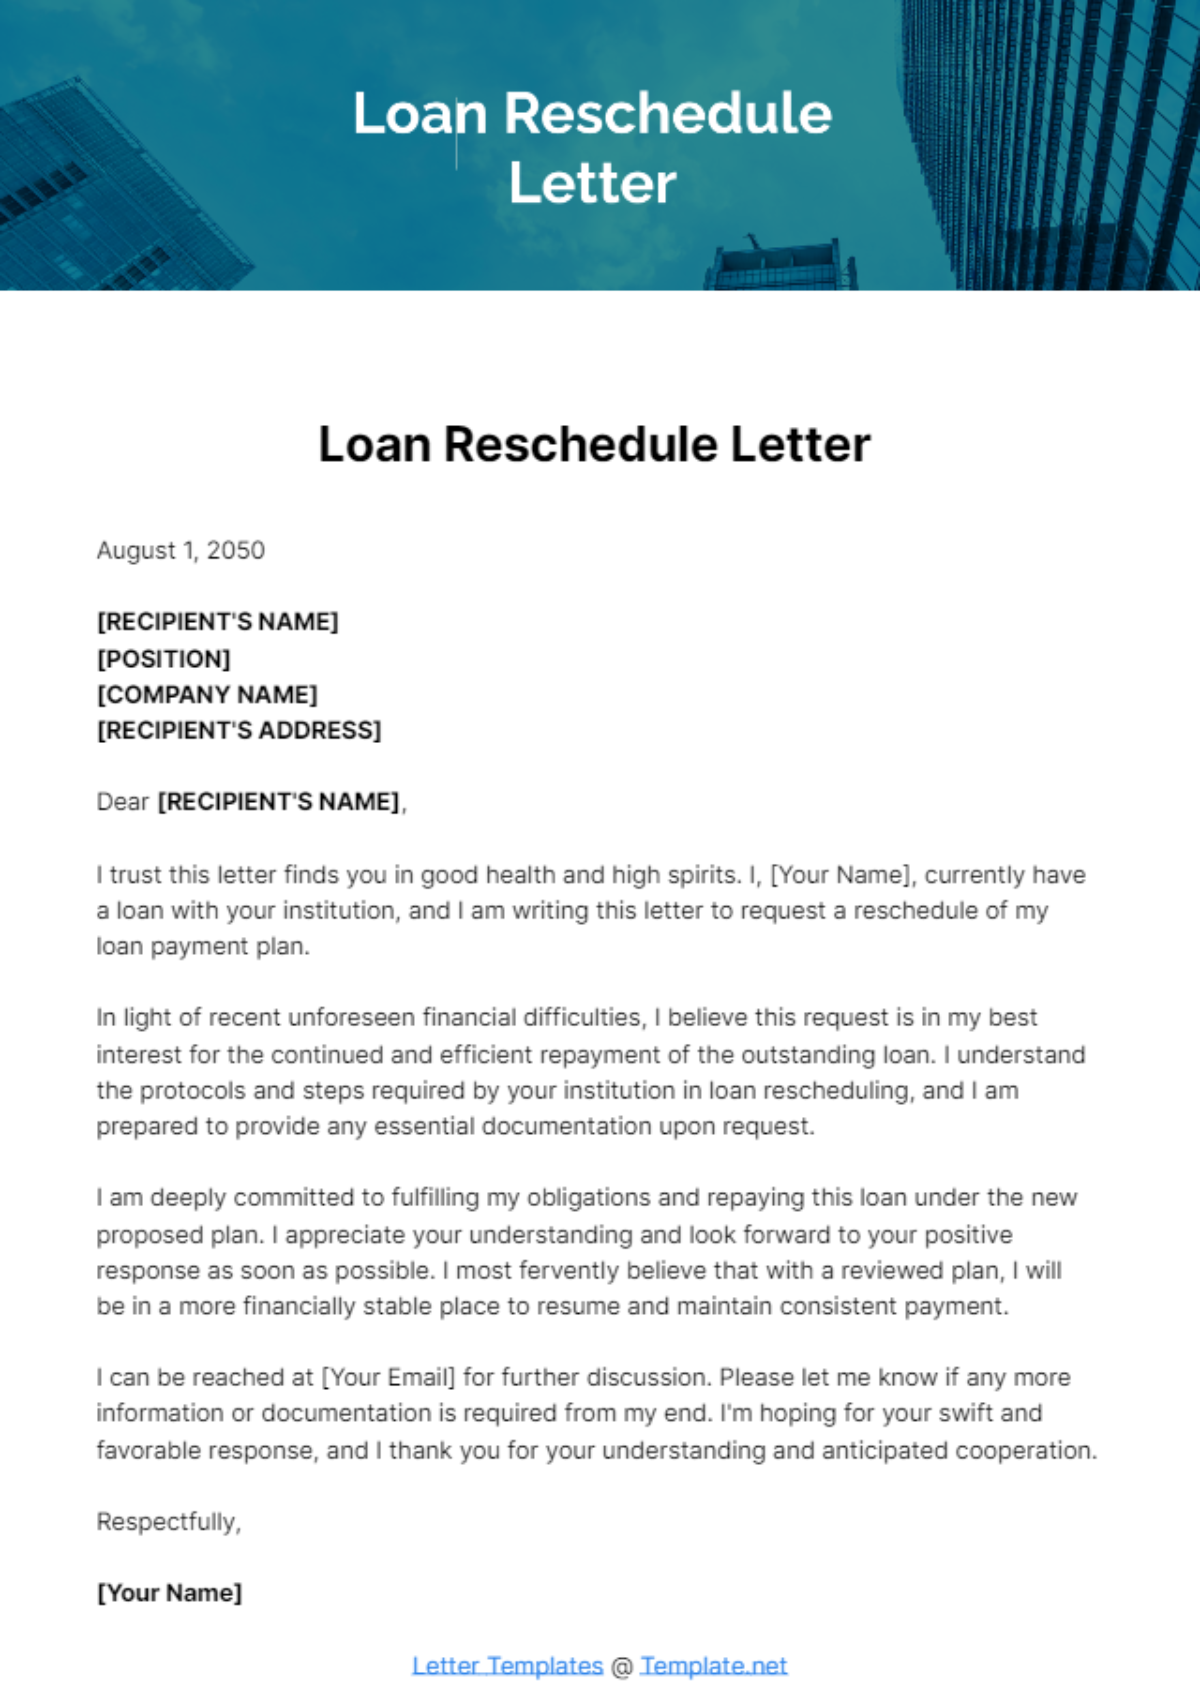 Free Loan Reschedule Letter Template